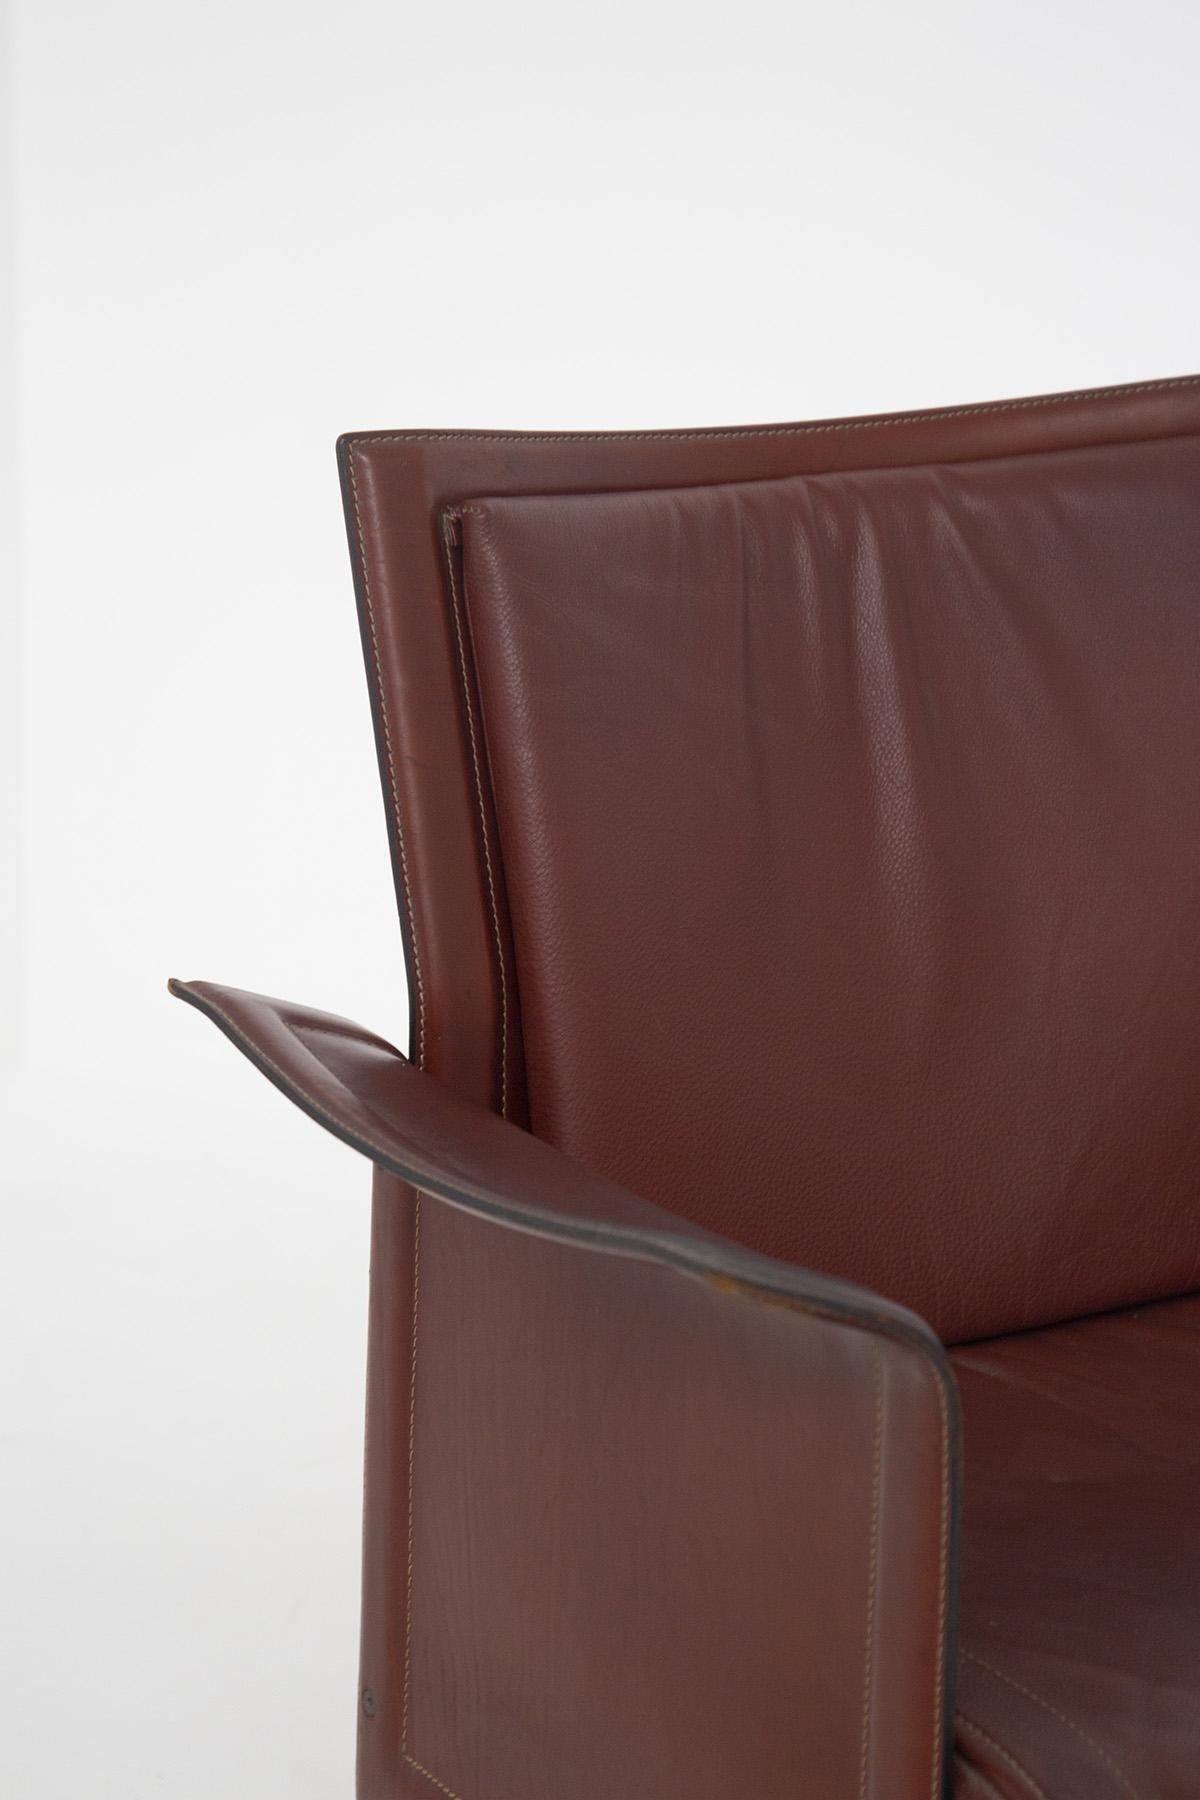 Tito Agnoli for Matteograssi Desk Armchair Korium in Leather, Label 4